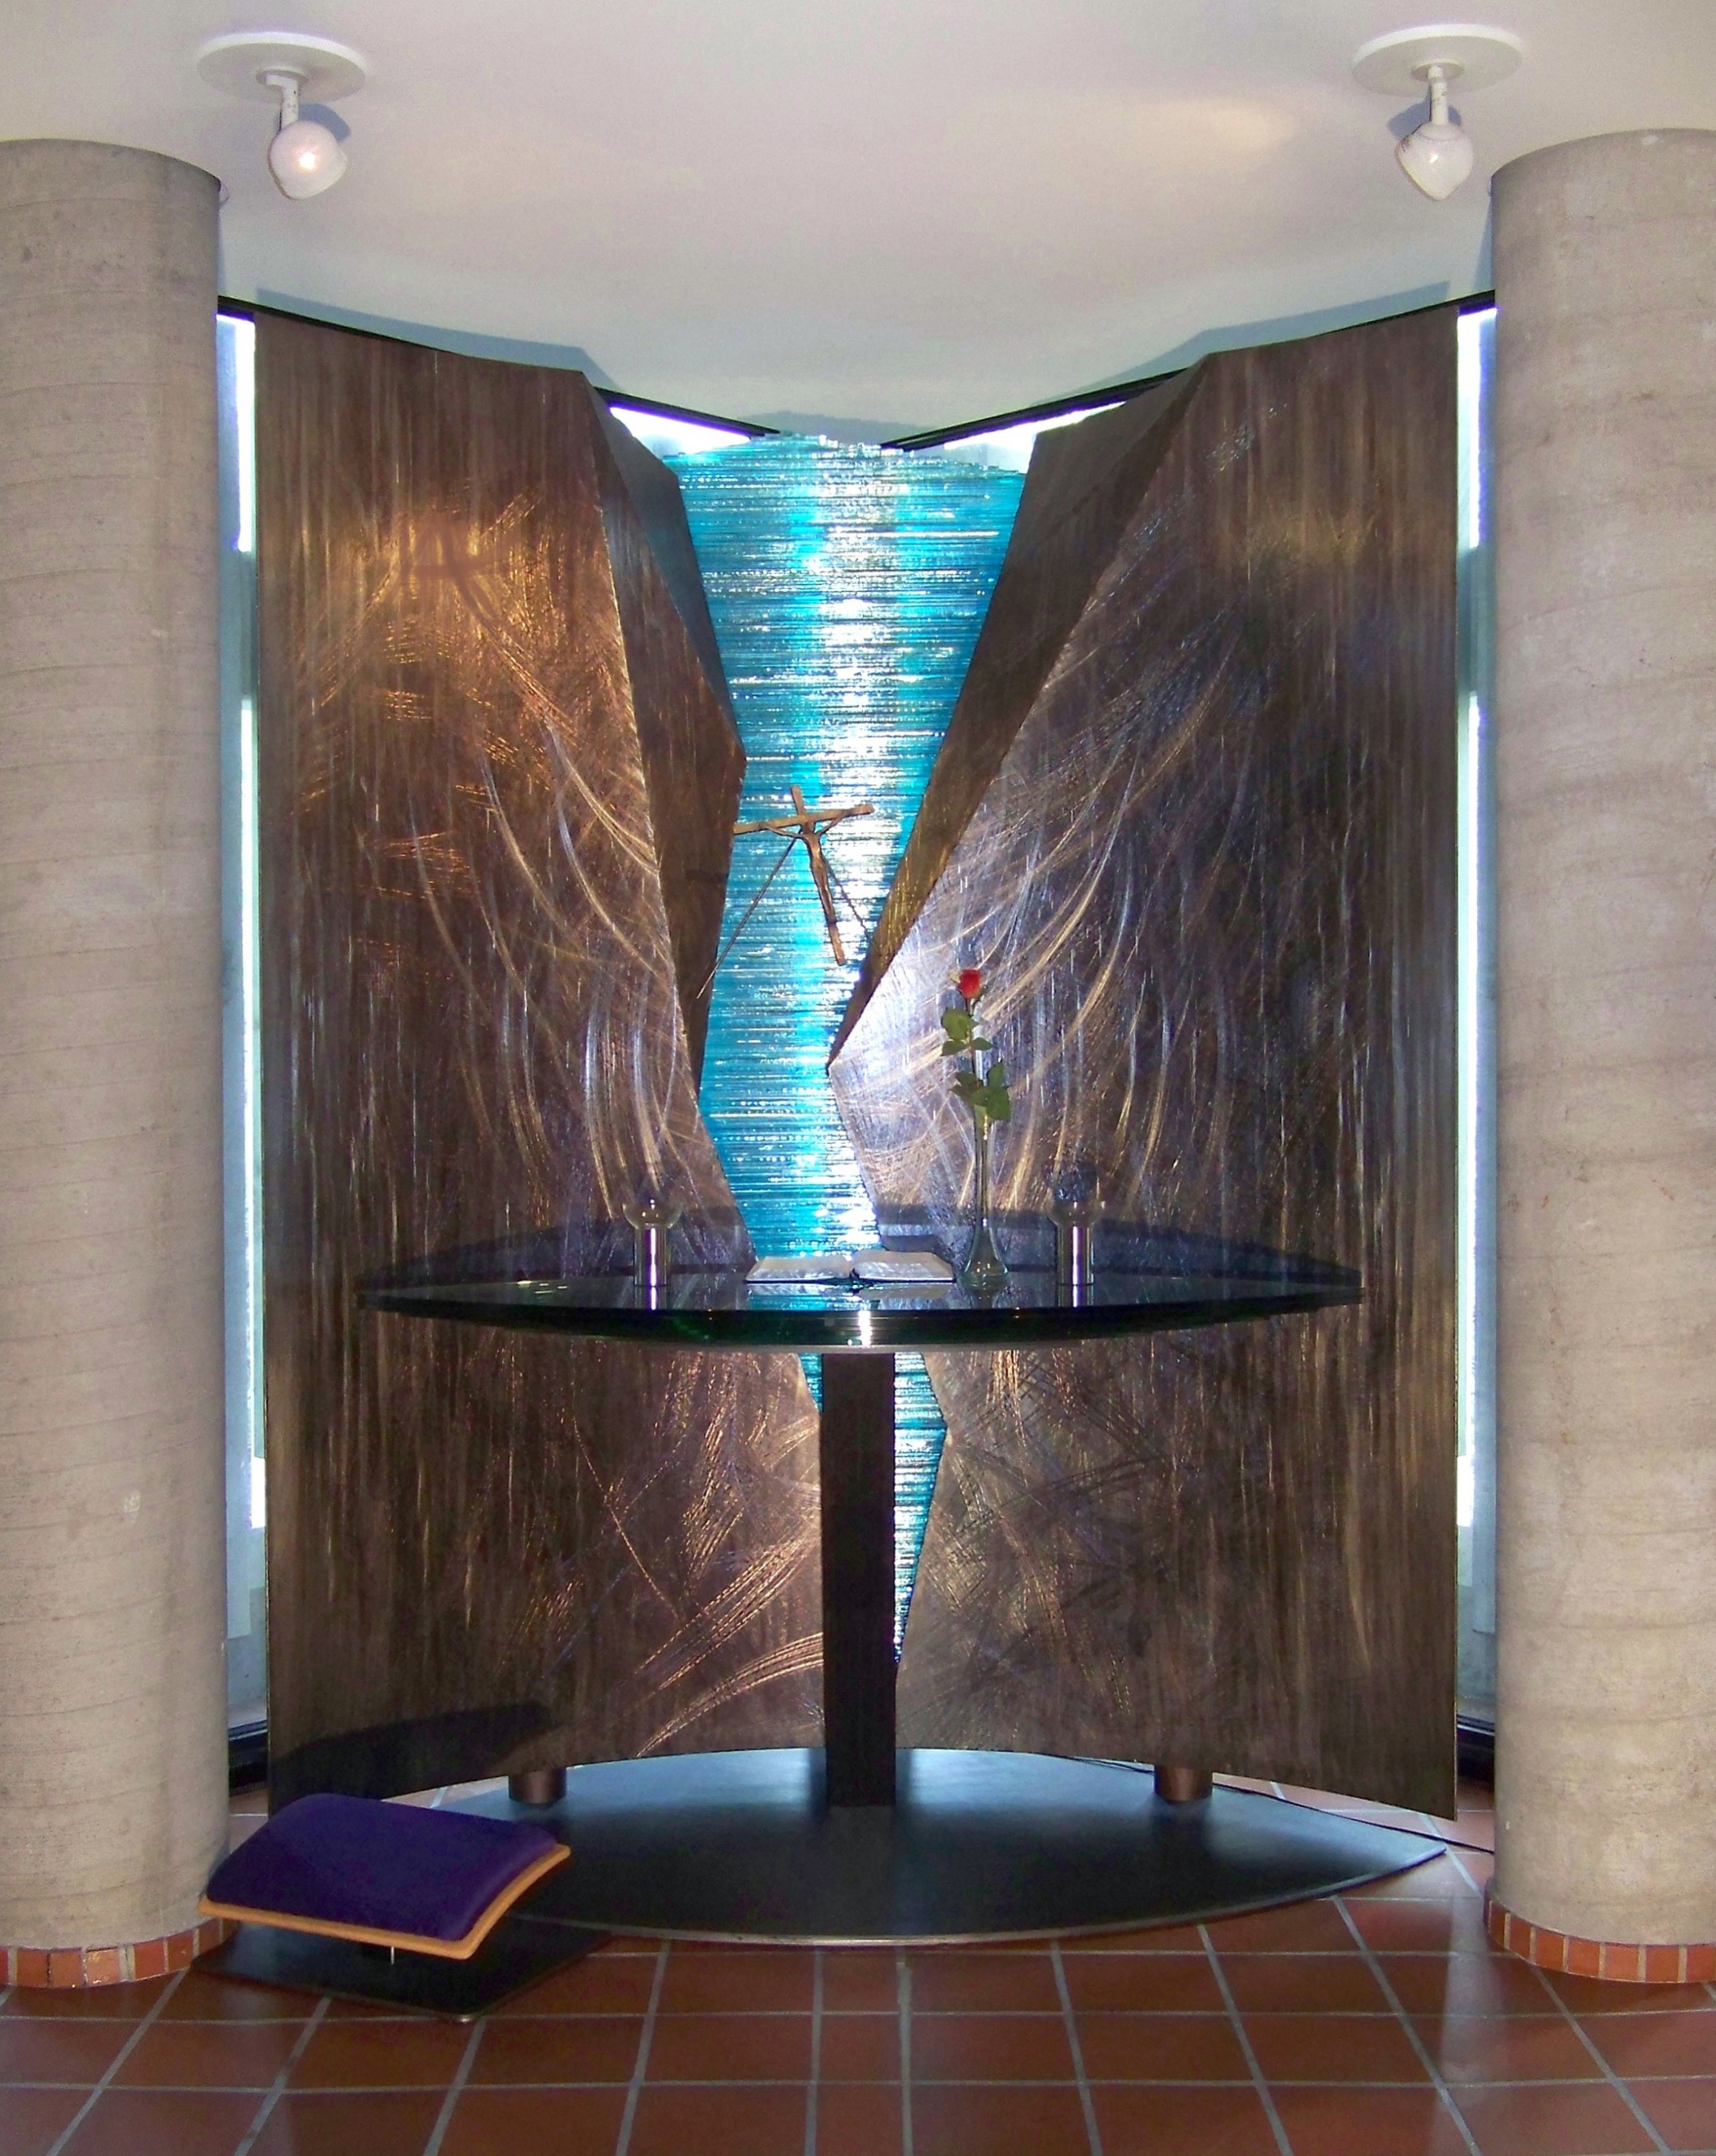 1. Altertavle, 2002, 230 x 160 x 70 cm, anlopt staal, bronse, solv og glass